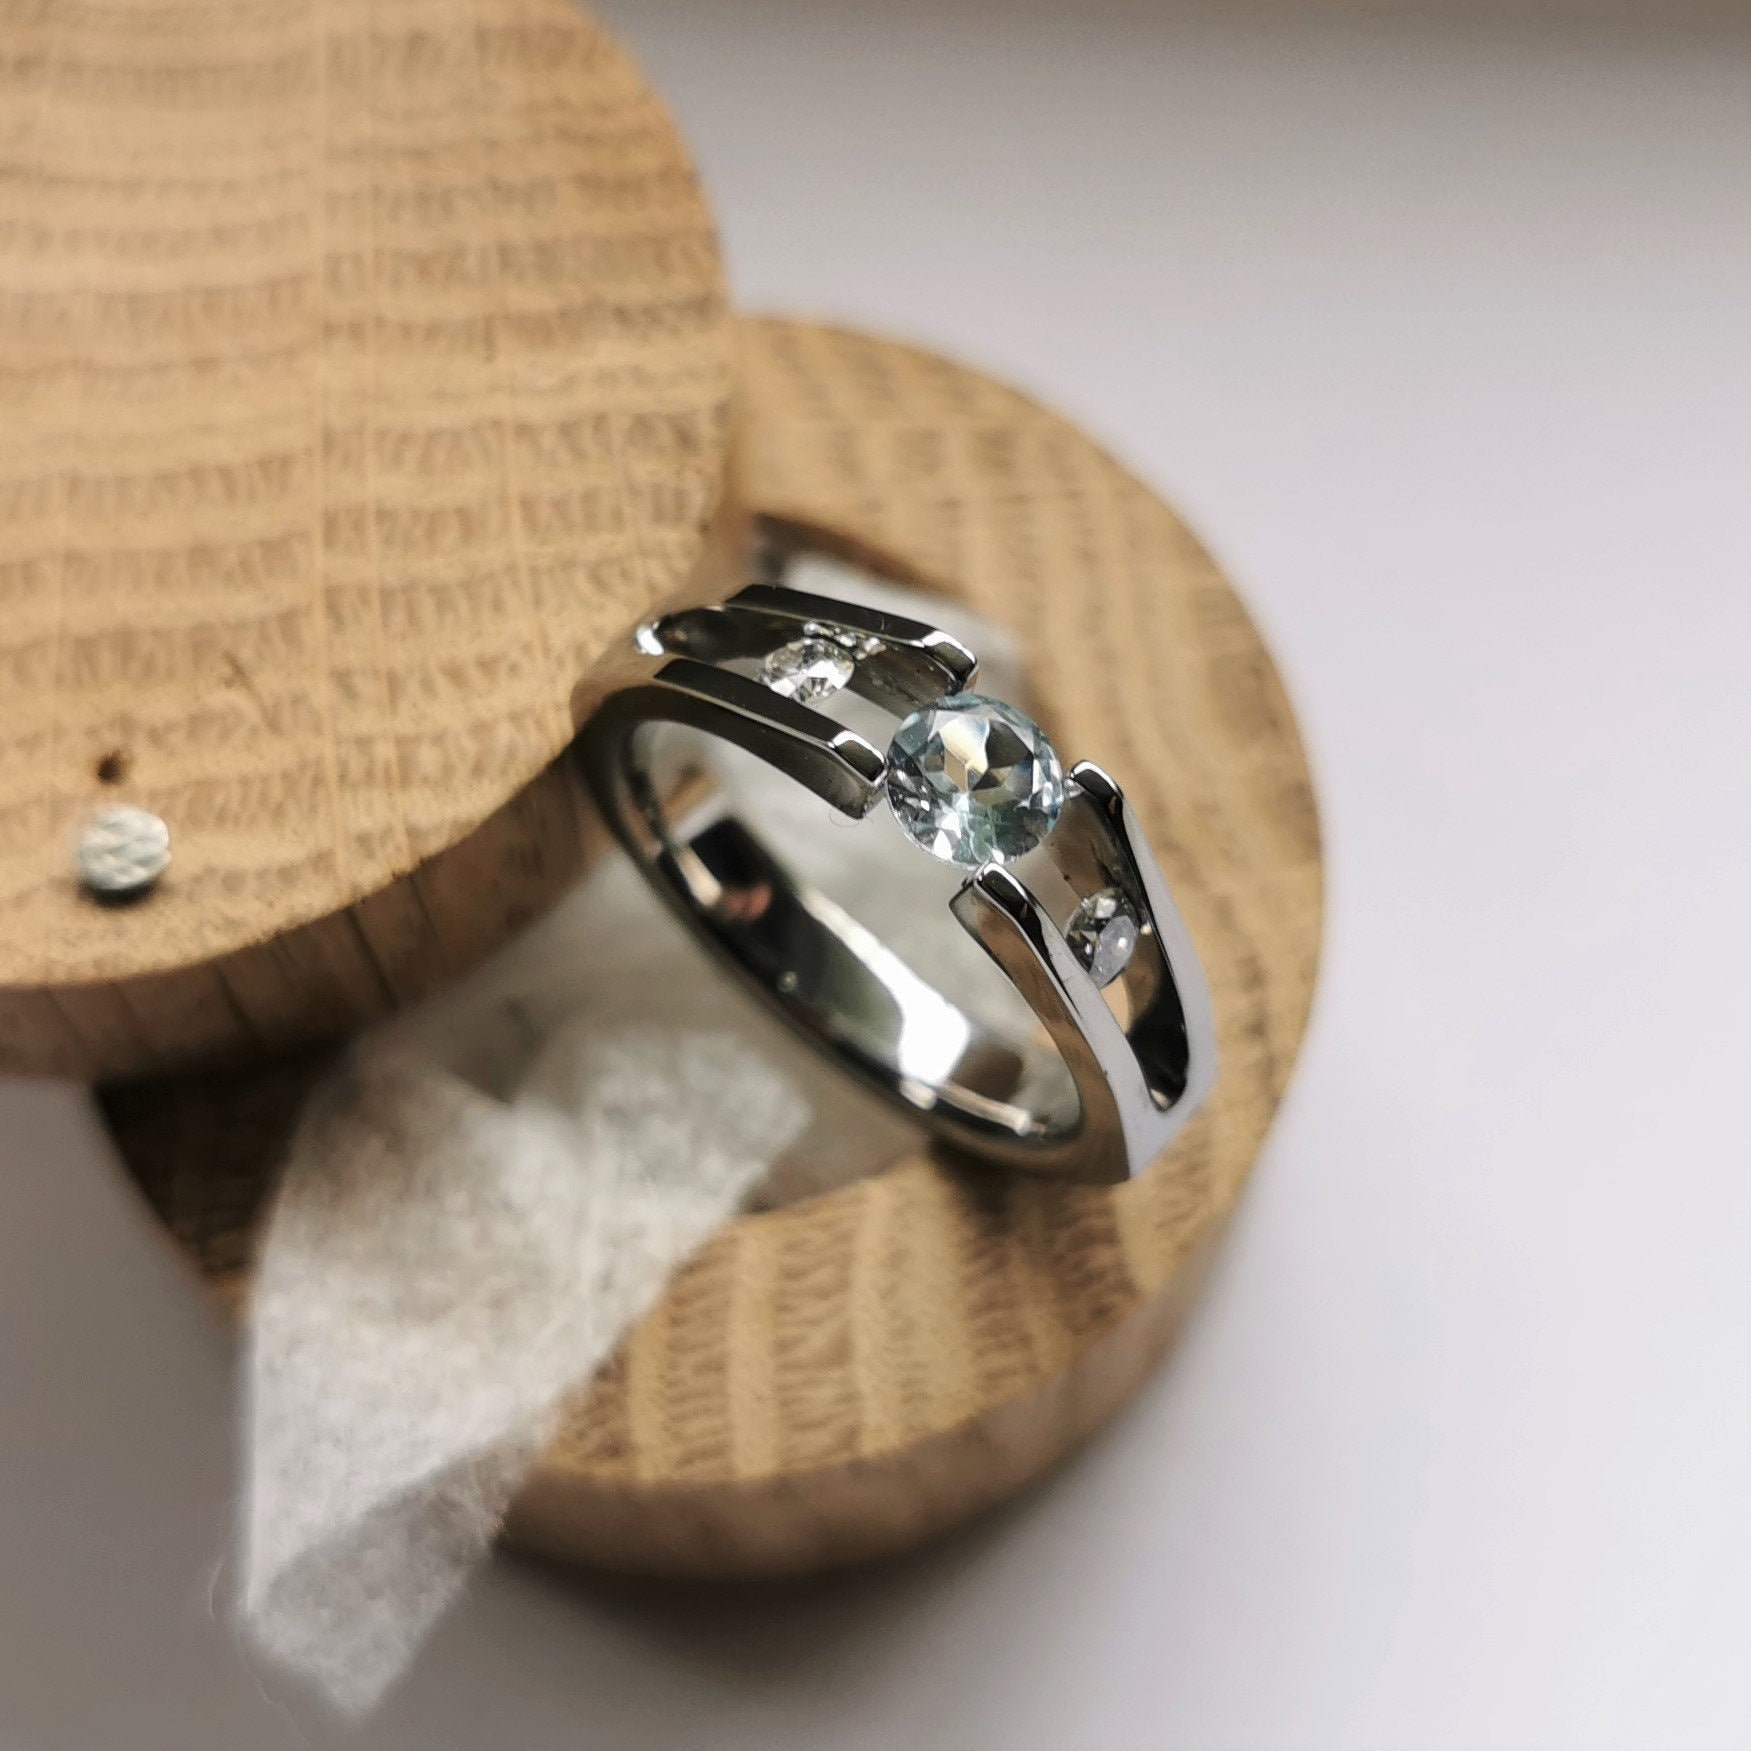 Pipe-Cut Tension Titanium Rings With Round Stones 